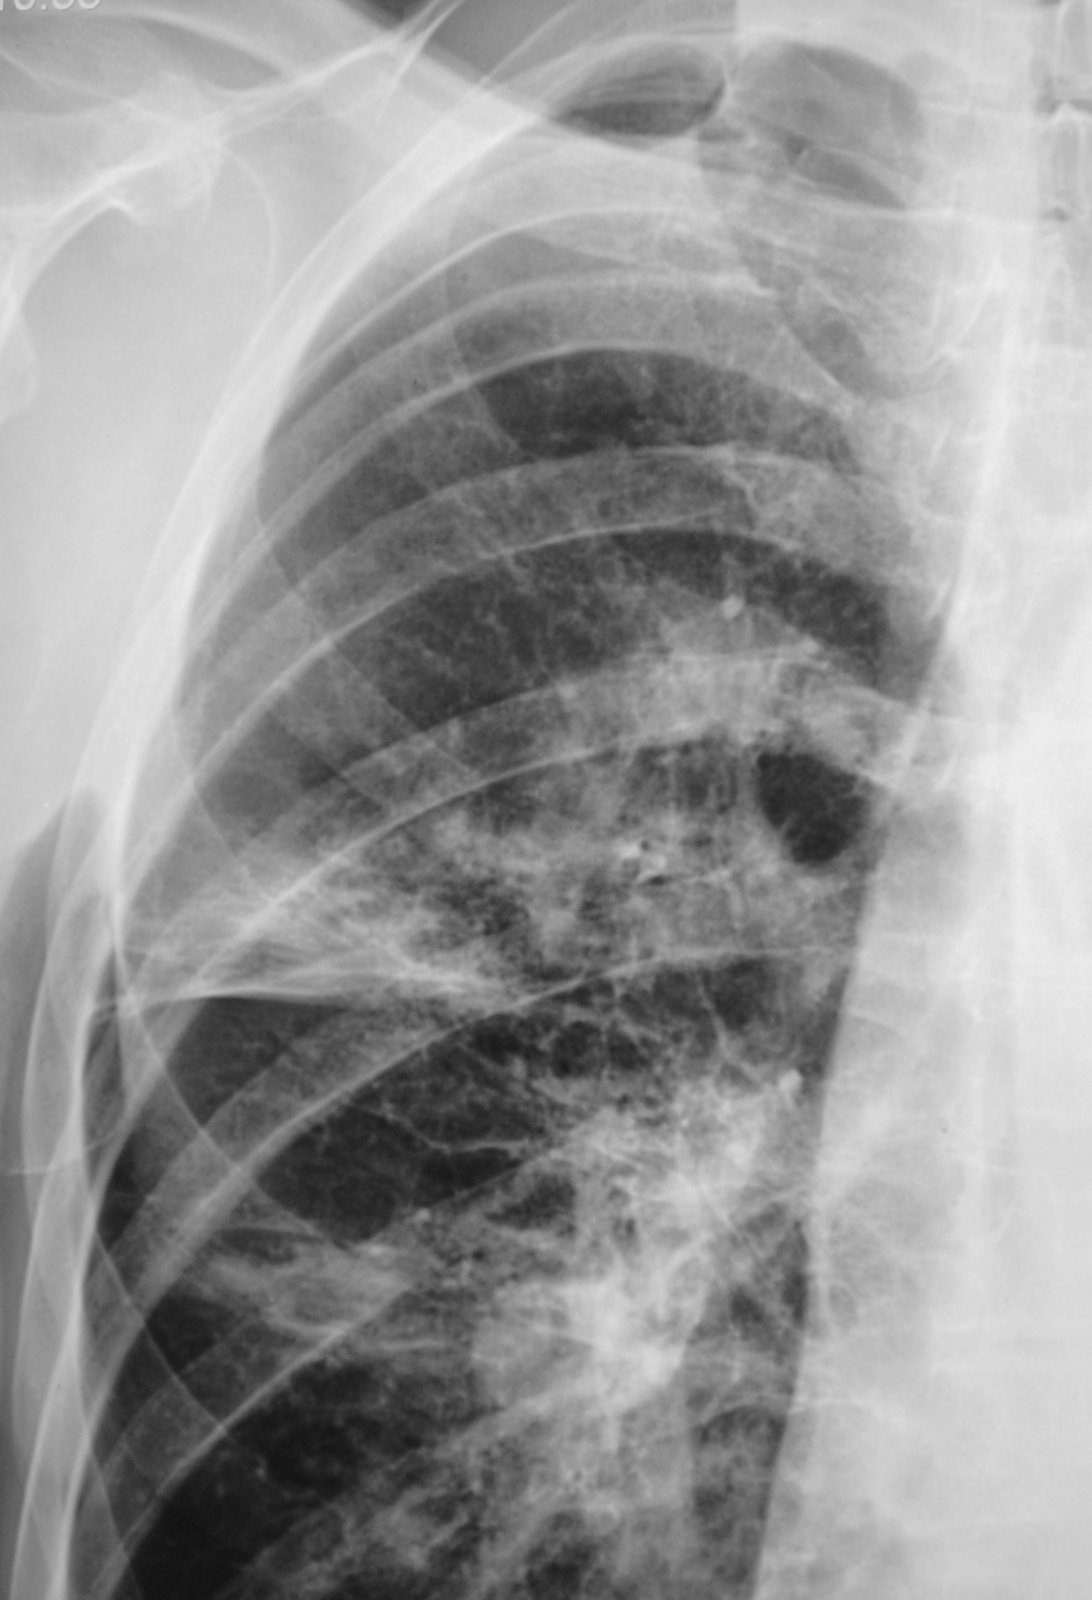 Пневмонии на рентгене у взрослых фото